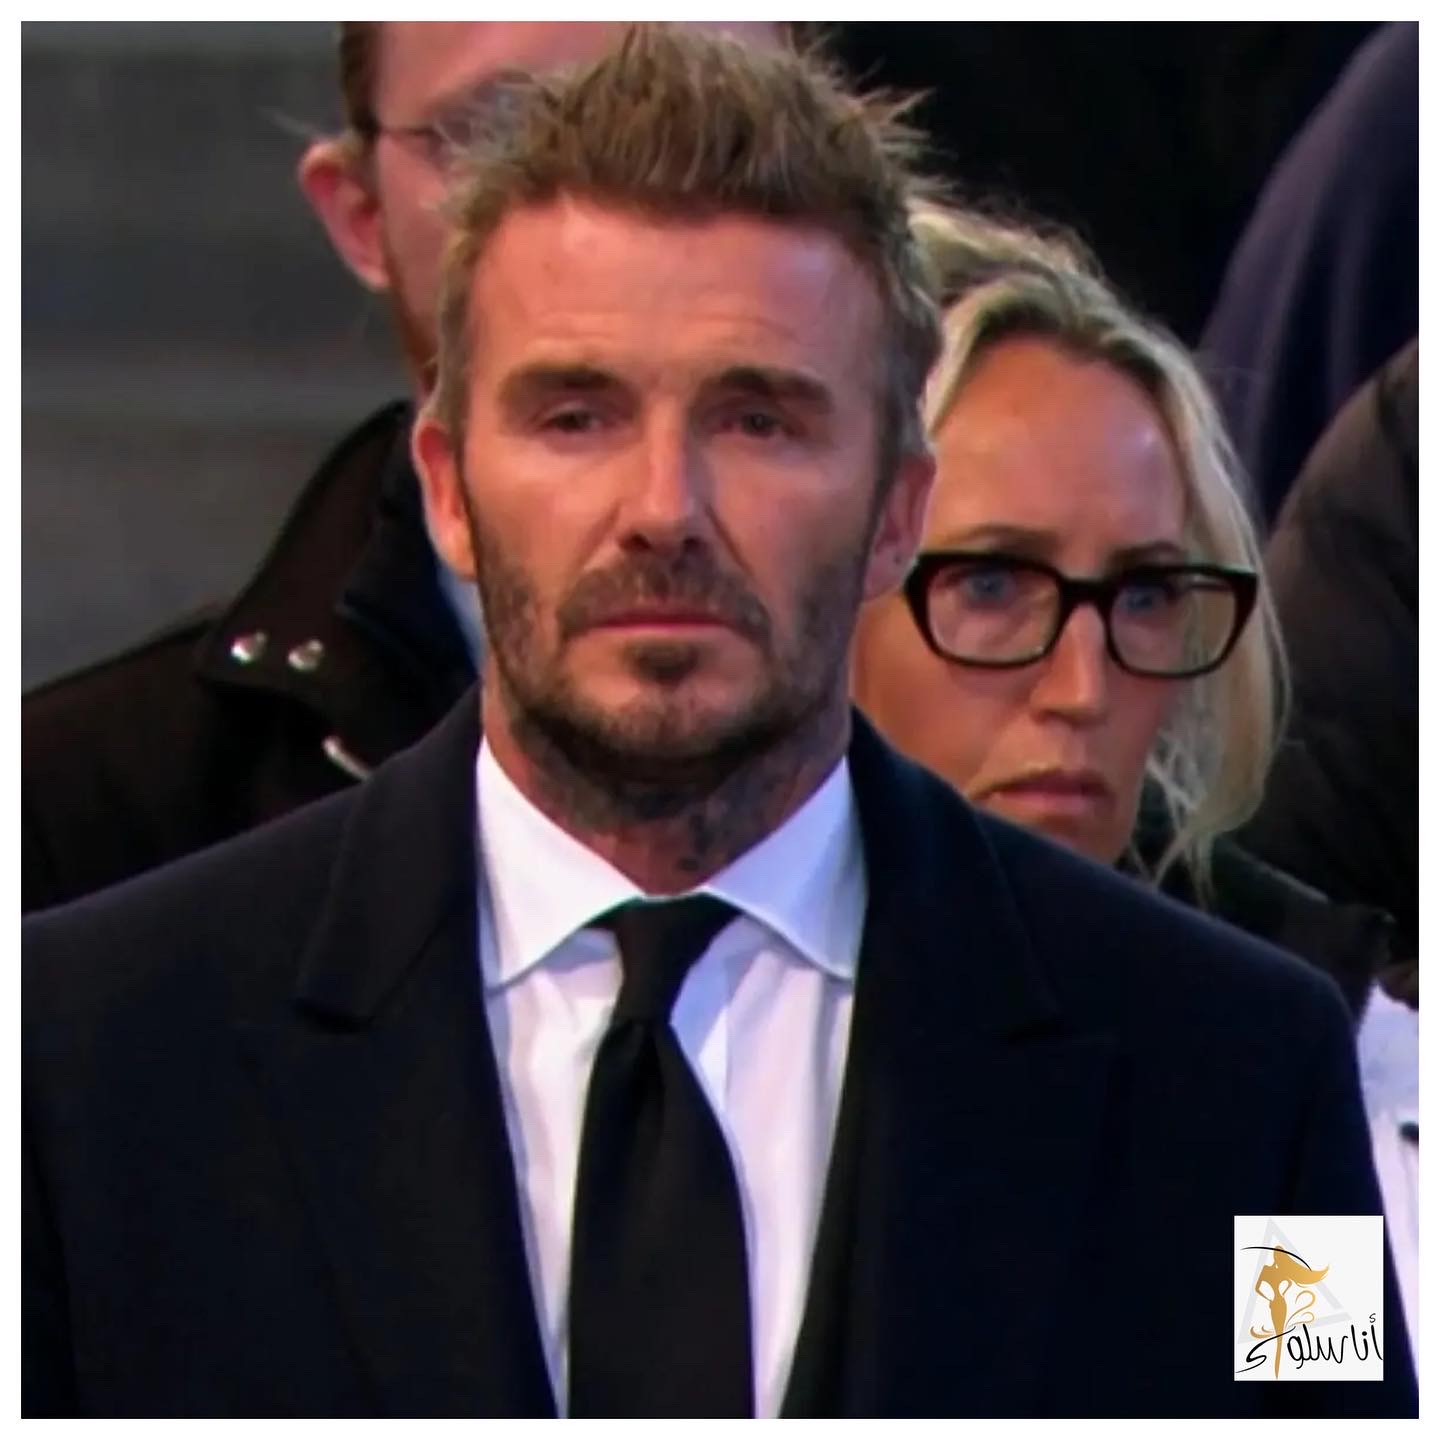 David Beckham verabschiedet sich von Queen Elizabeth